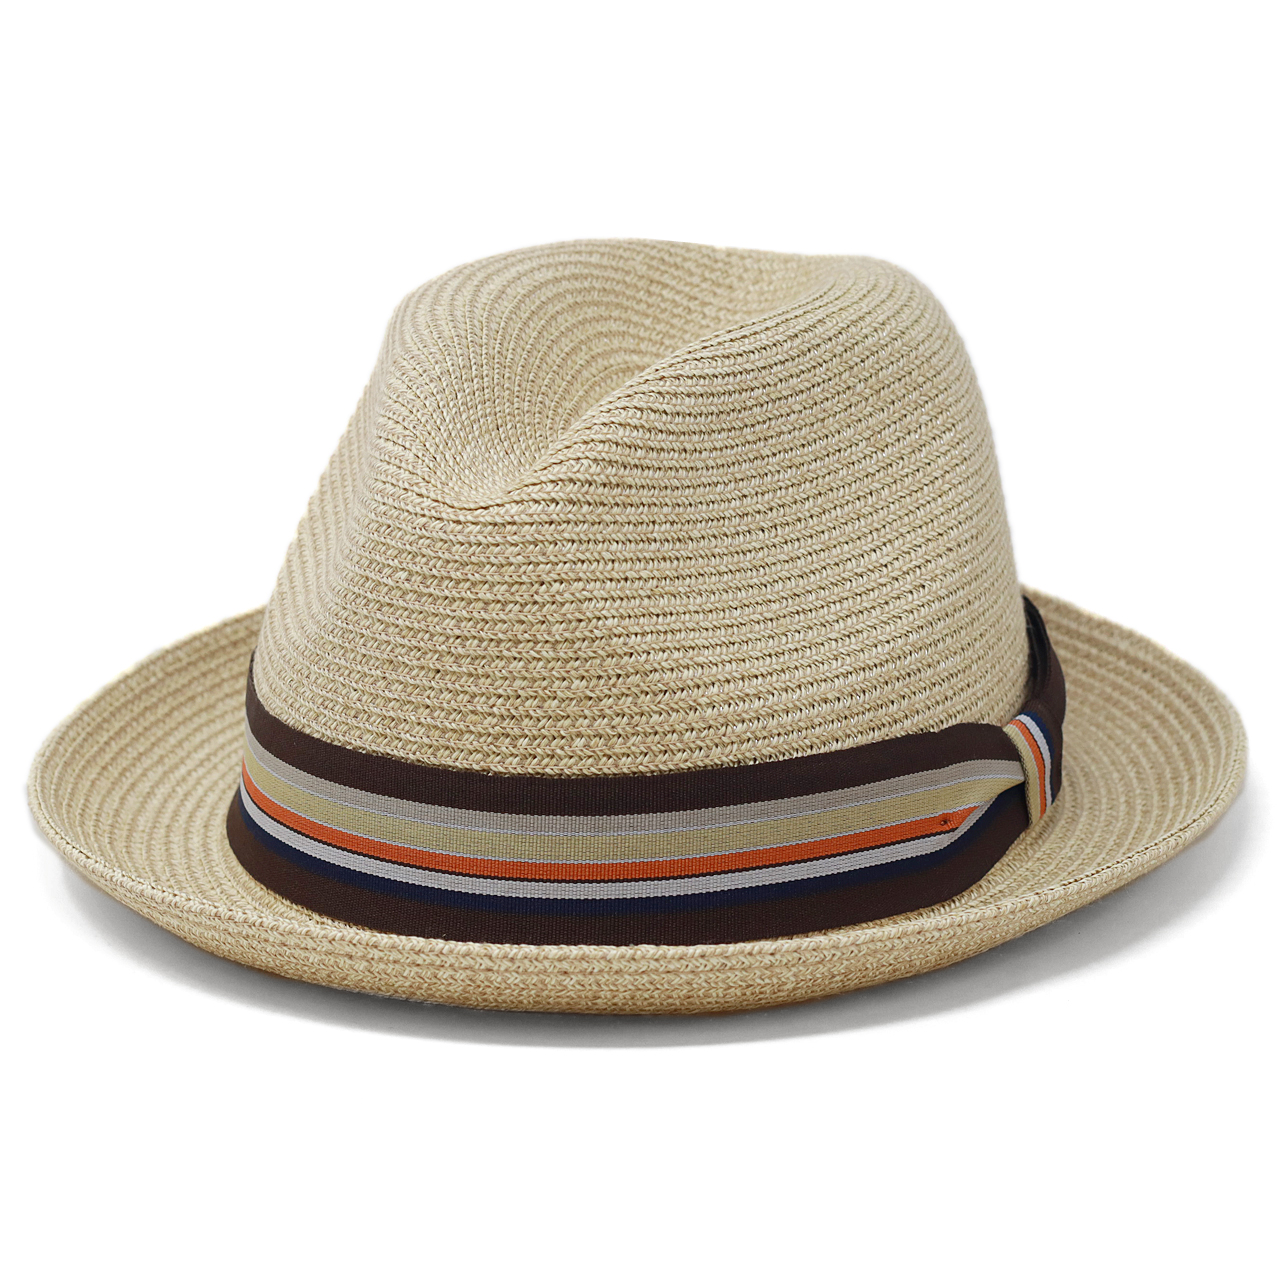 ブランド ハット Bailey ベイリー 帽子 夏の帽子 ストローハット 海外帽子ブランド メンズ ナチュラルカラー ベージュ 